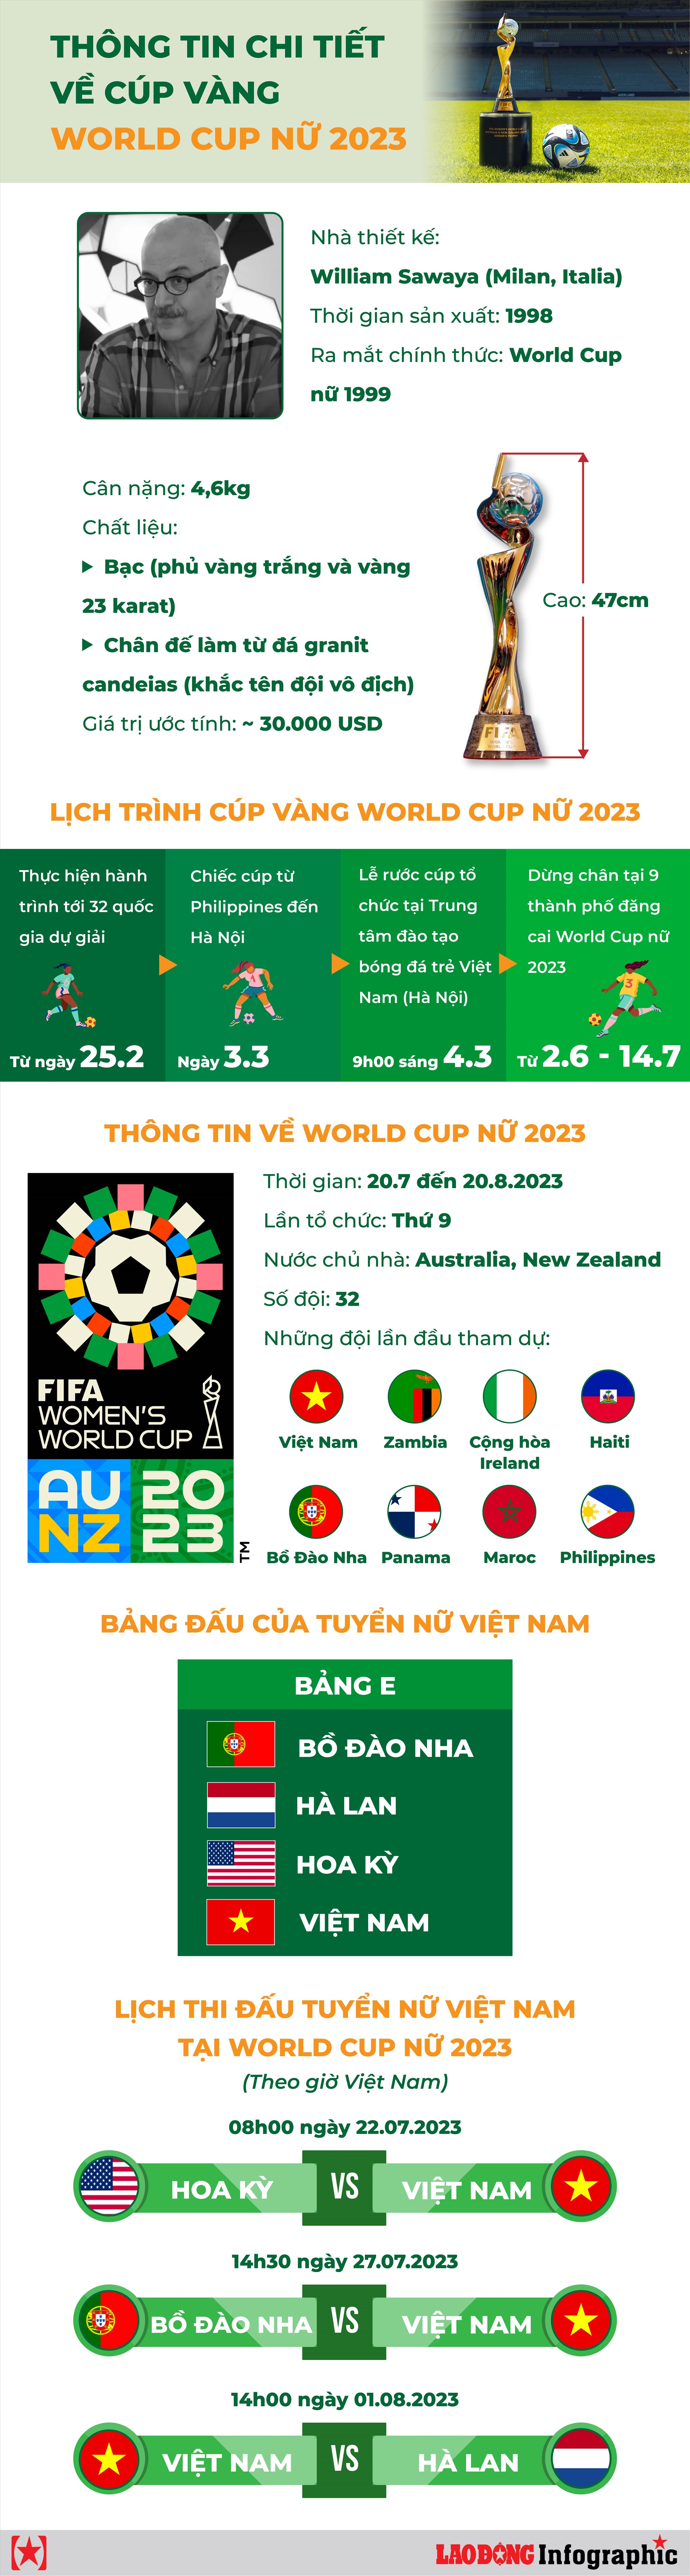 Chi tiết về cúp vàng và giải World Cup nữ 2023 tuyển Việt Nam tham dự